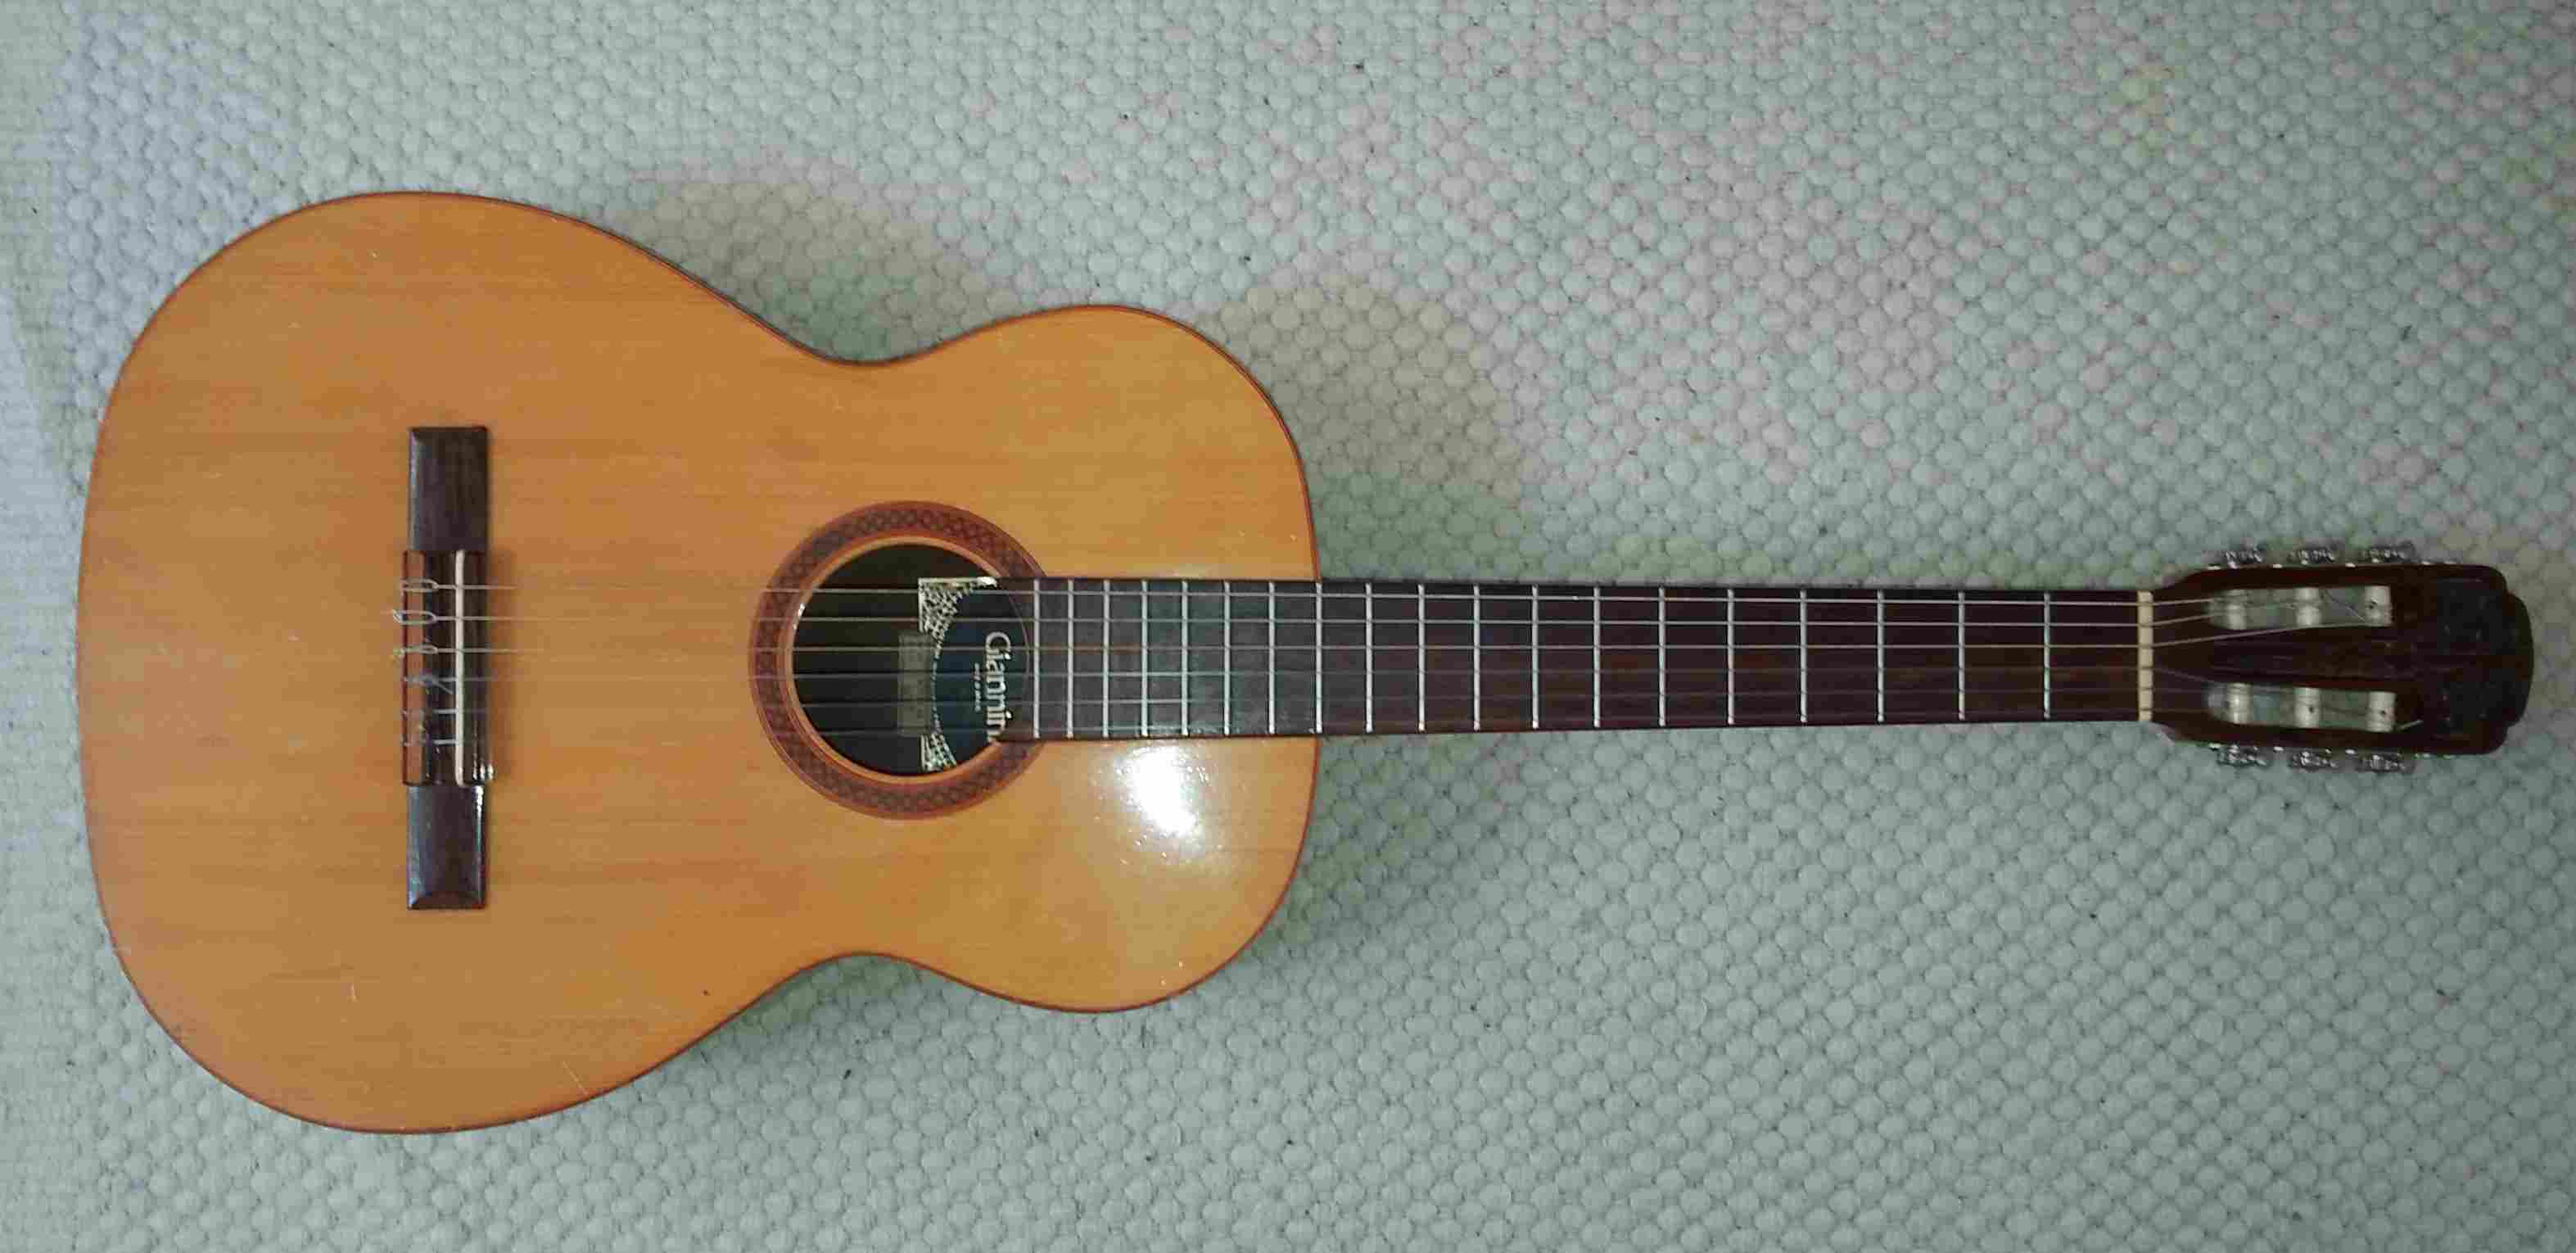 Gianini spanish guitar